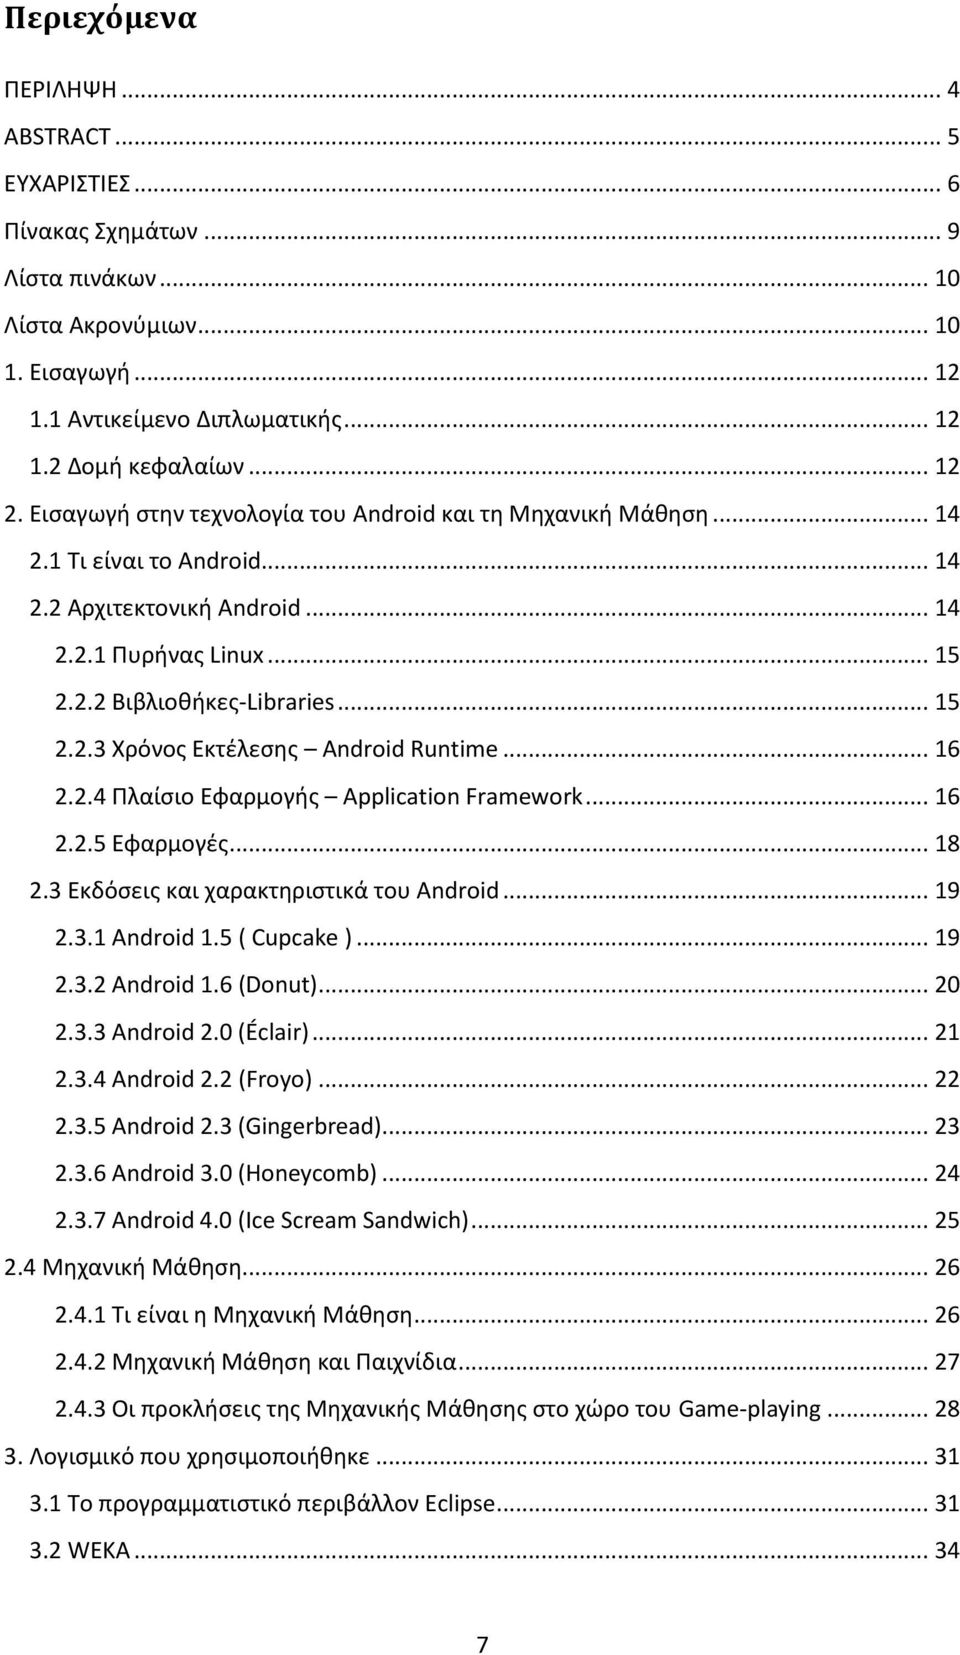 .. 16 2.2.4 Πλαίσιο Εφαρμογής Application Framework... 16 2.2.5 Εφαρμογές... 18 2.3 Εκδόσεις και χαρακτηριστικά του Android... 19 2.3.1 Android 1.5 ( Cupcake )... 19 2.3.2 Android 1.6 (Donut)... 20 2.